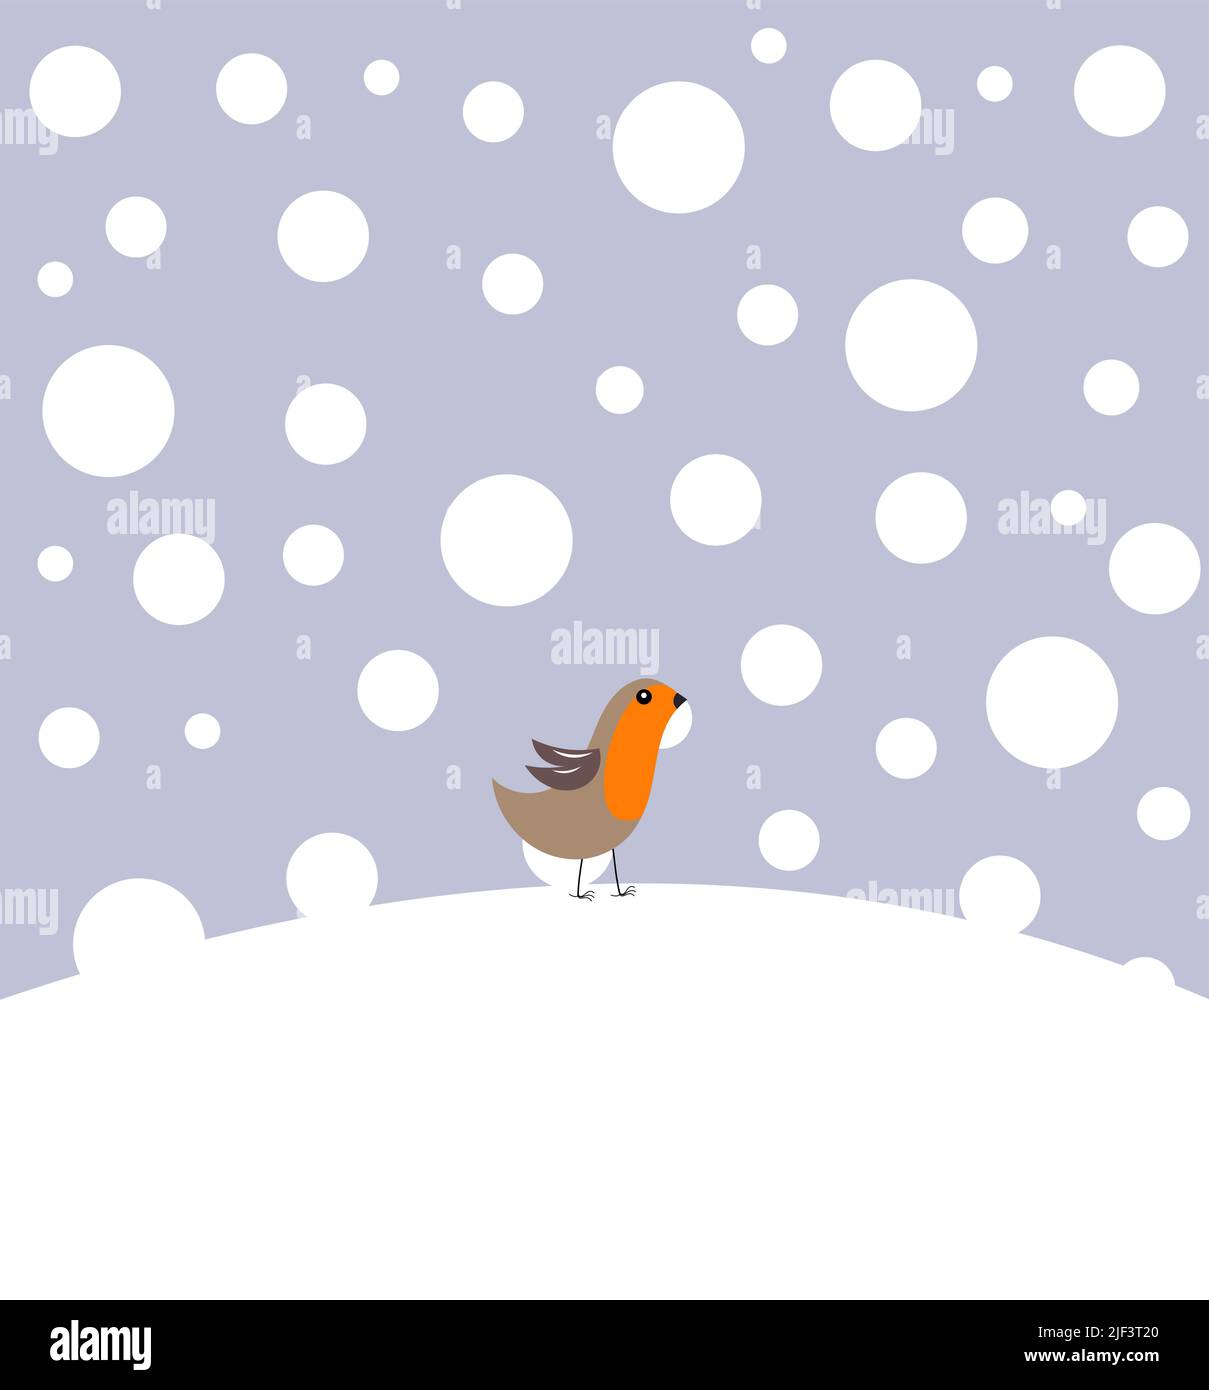 Petit oiseau de robin dans les paysages d'hiver Illustration de Vecteur